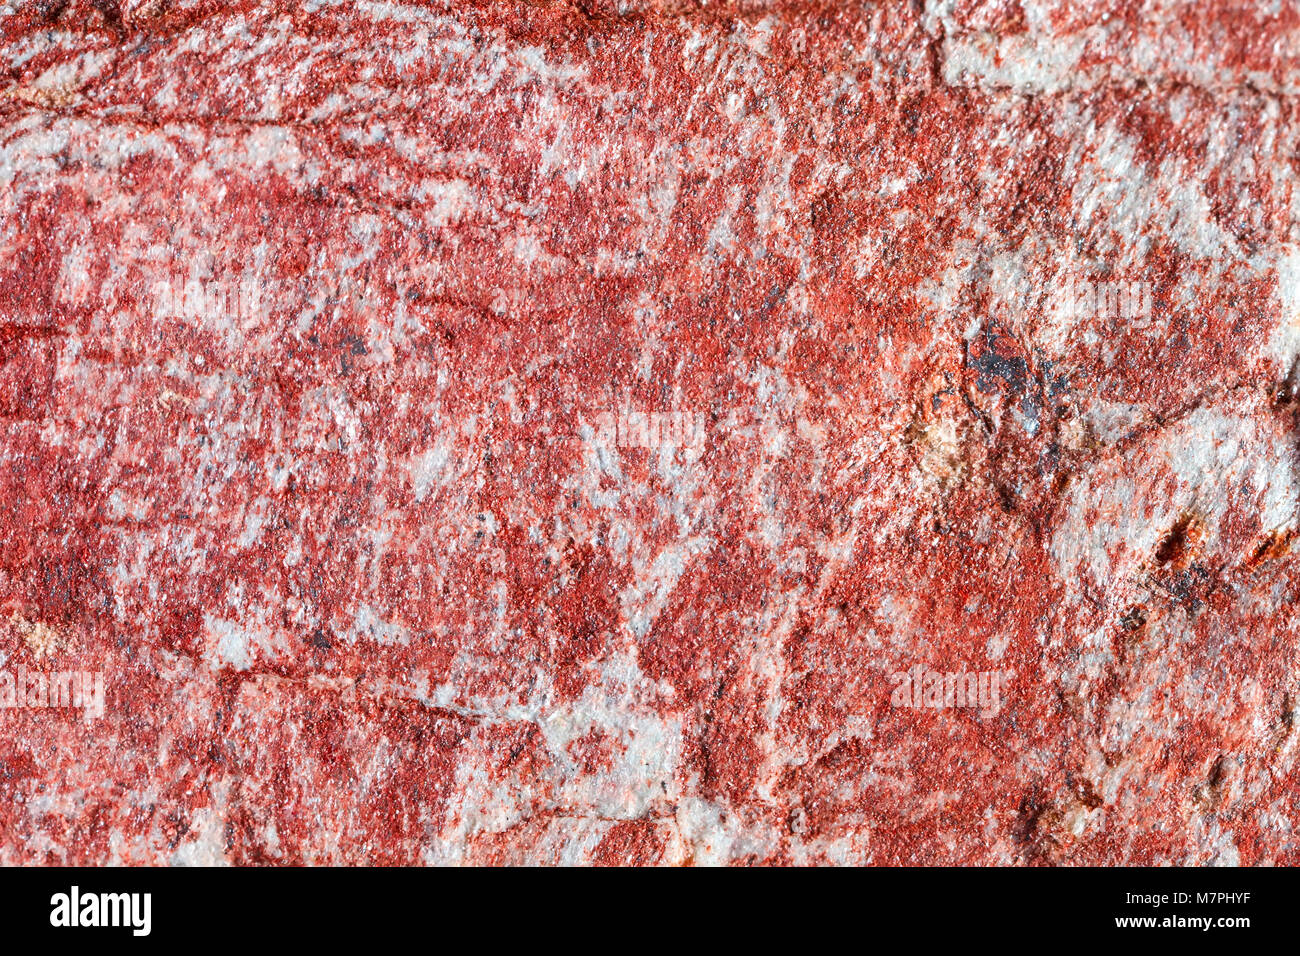 Makroaufnahmen von natürlichen Edelstein. Das rohe mineral Magnetit, Brasilien. Isoliertes Objekt auf einem weißen Hintergrund. Stockfoto